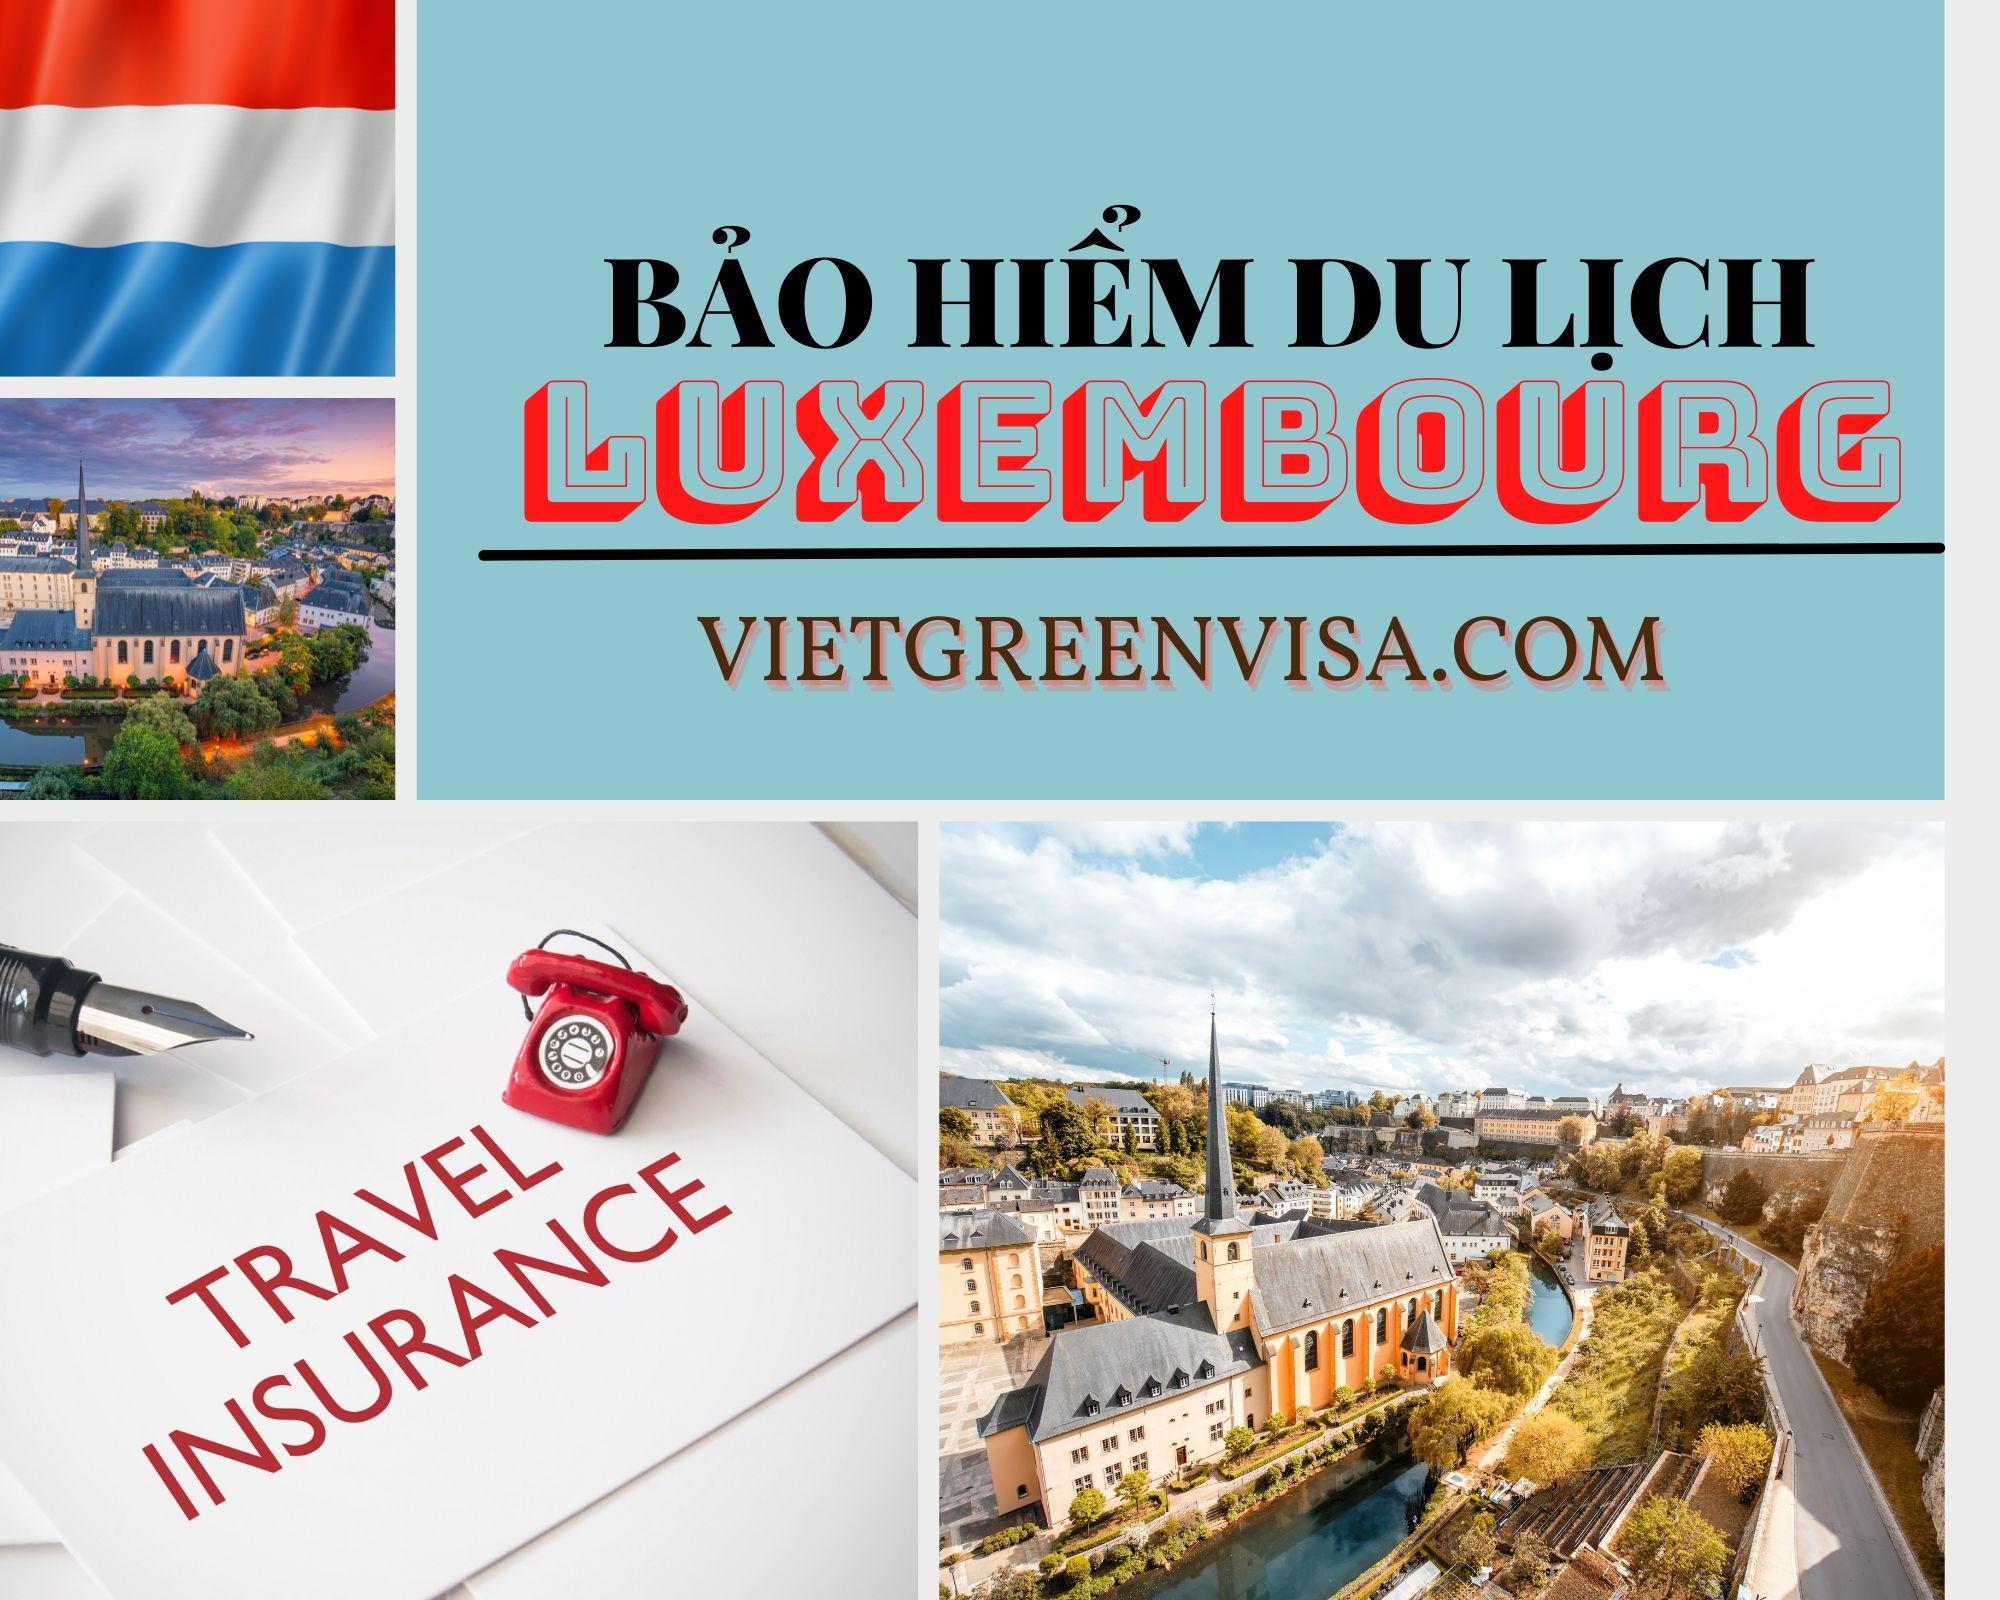 Đại lý bảo hiểm du lịch Luxembourg uy tín tại Hà Nội, Hồ Chí Minh